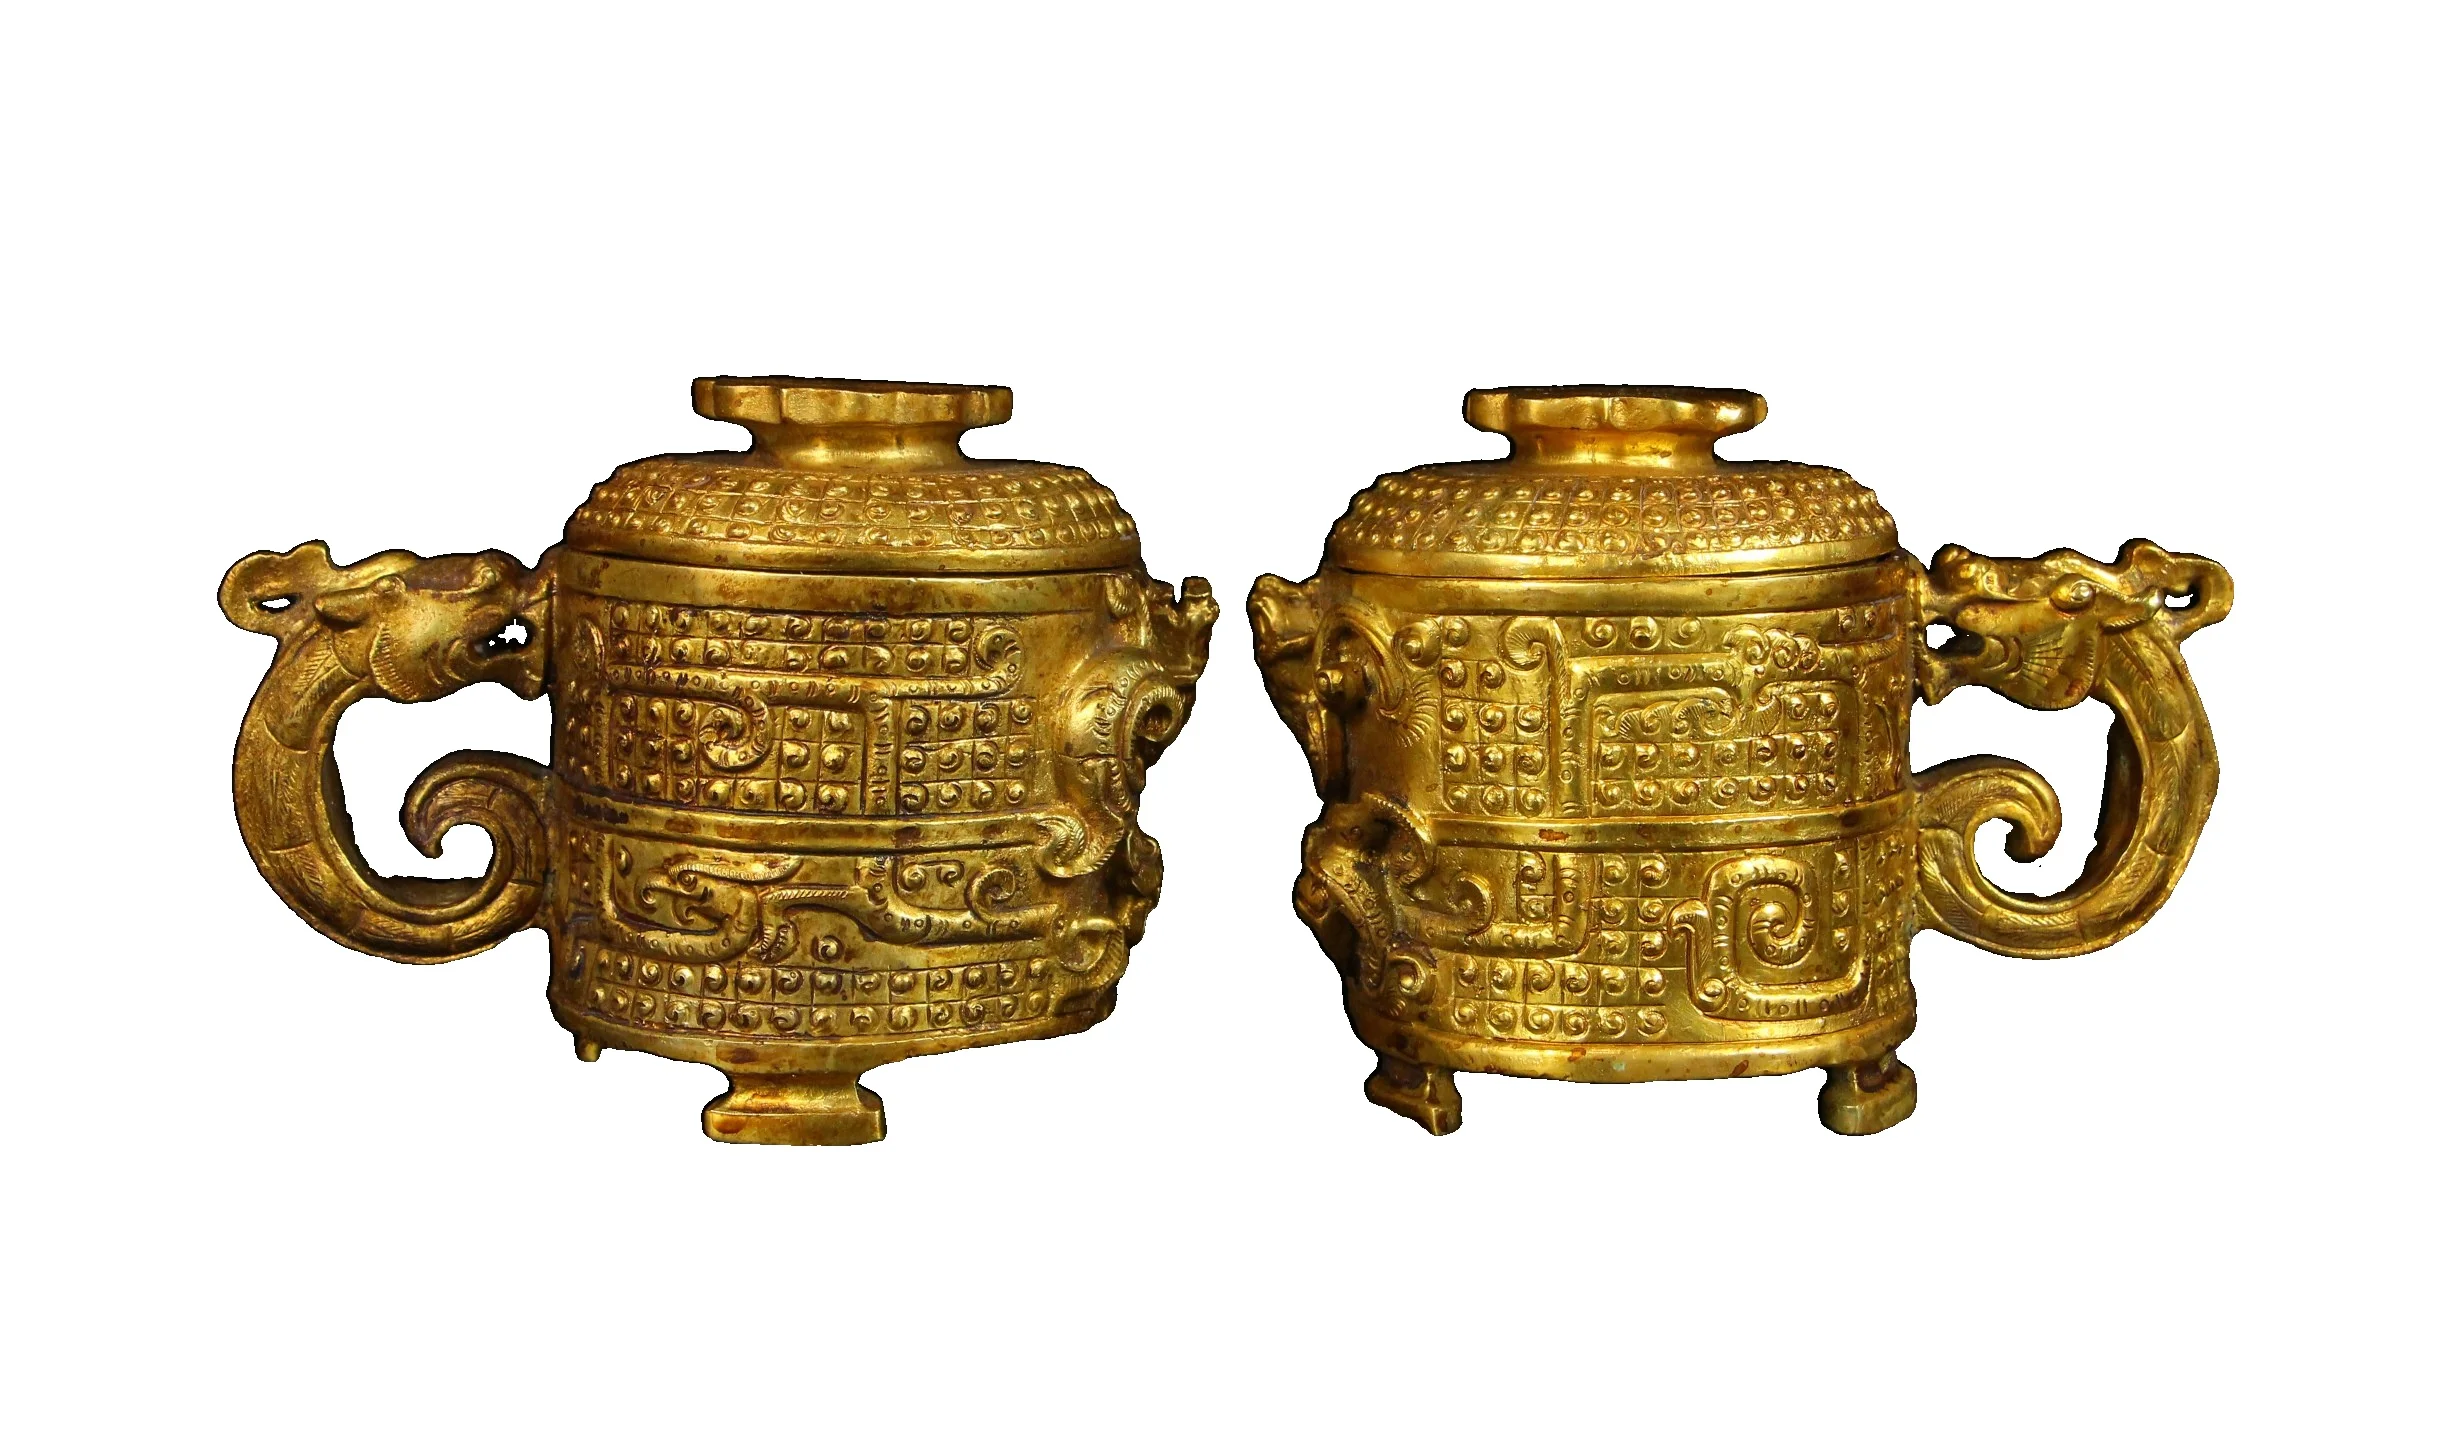 

LaoJunLu пара позолоченных бронзовых чашек из династии Тан, ручная работа, тонкая резьба, толстые и натуральные